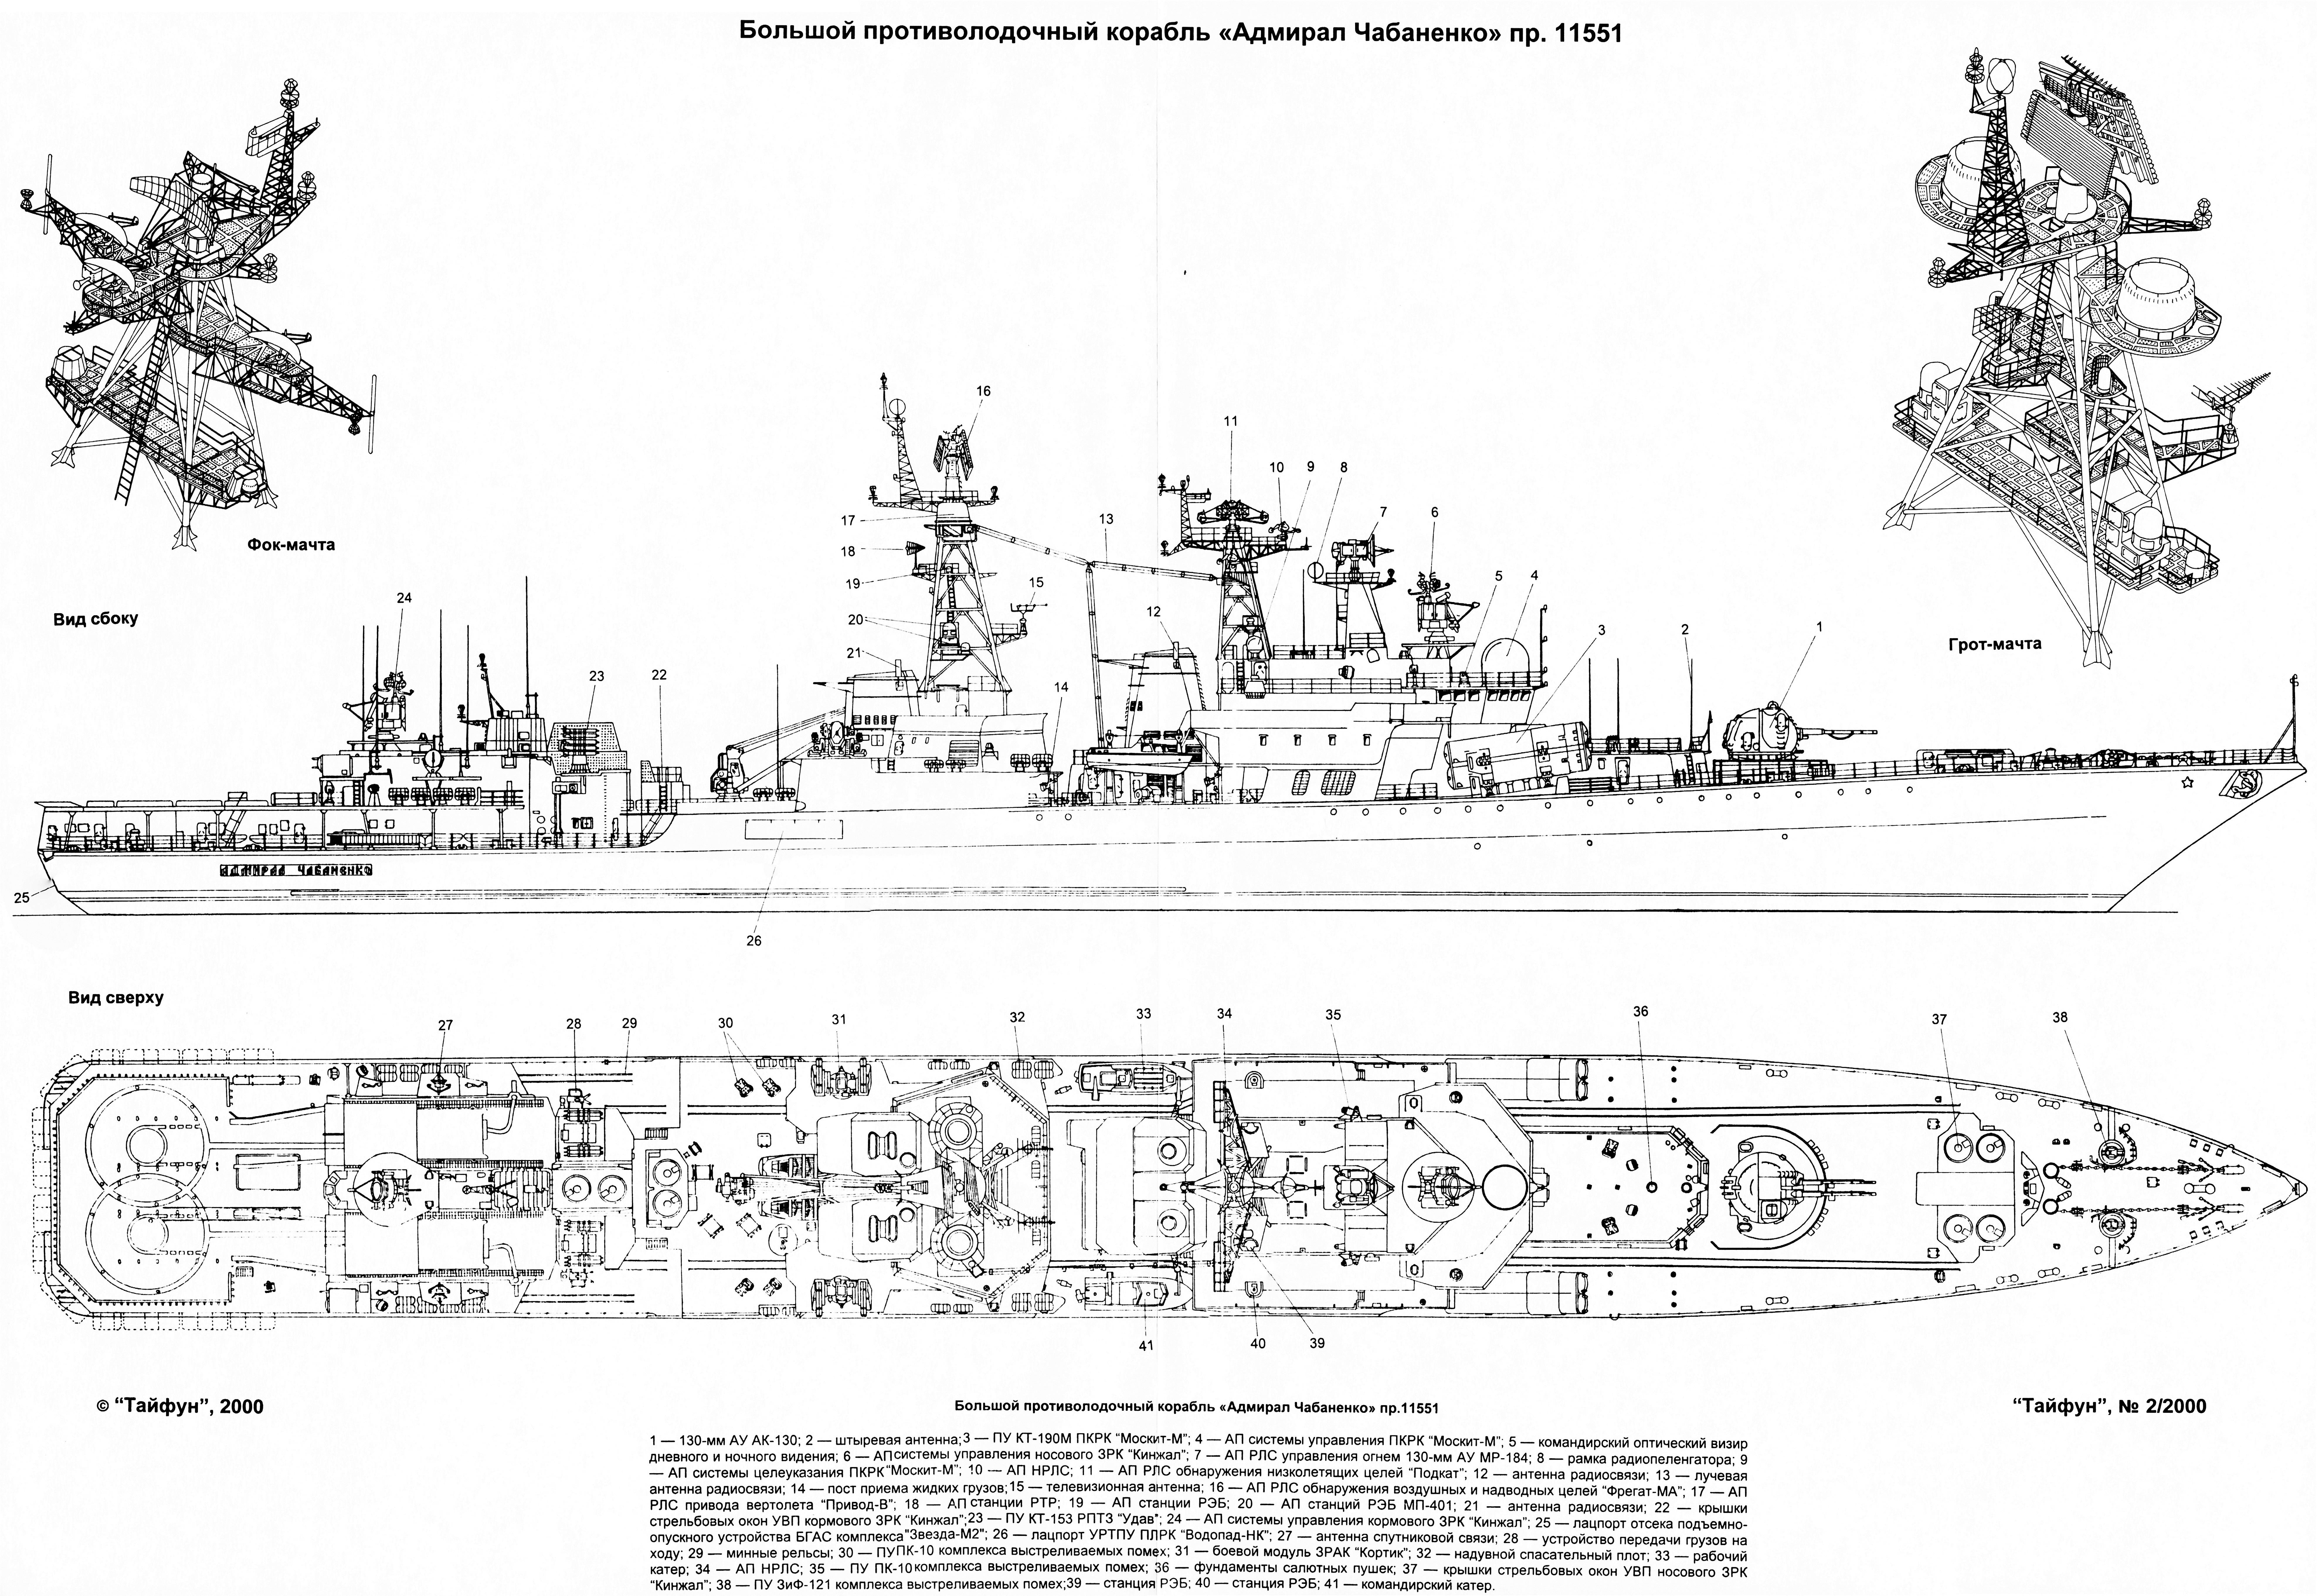 Большие противолодочные корабли проекта 1155 - wi-ki.ru c комментариями